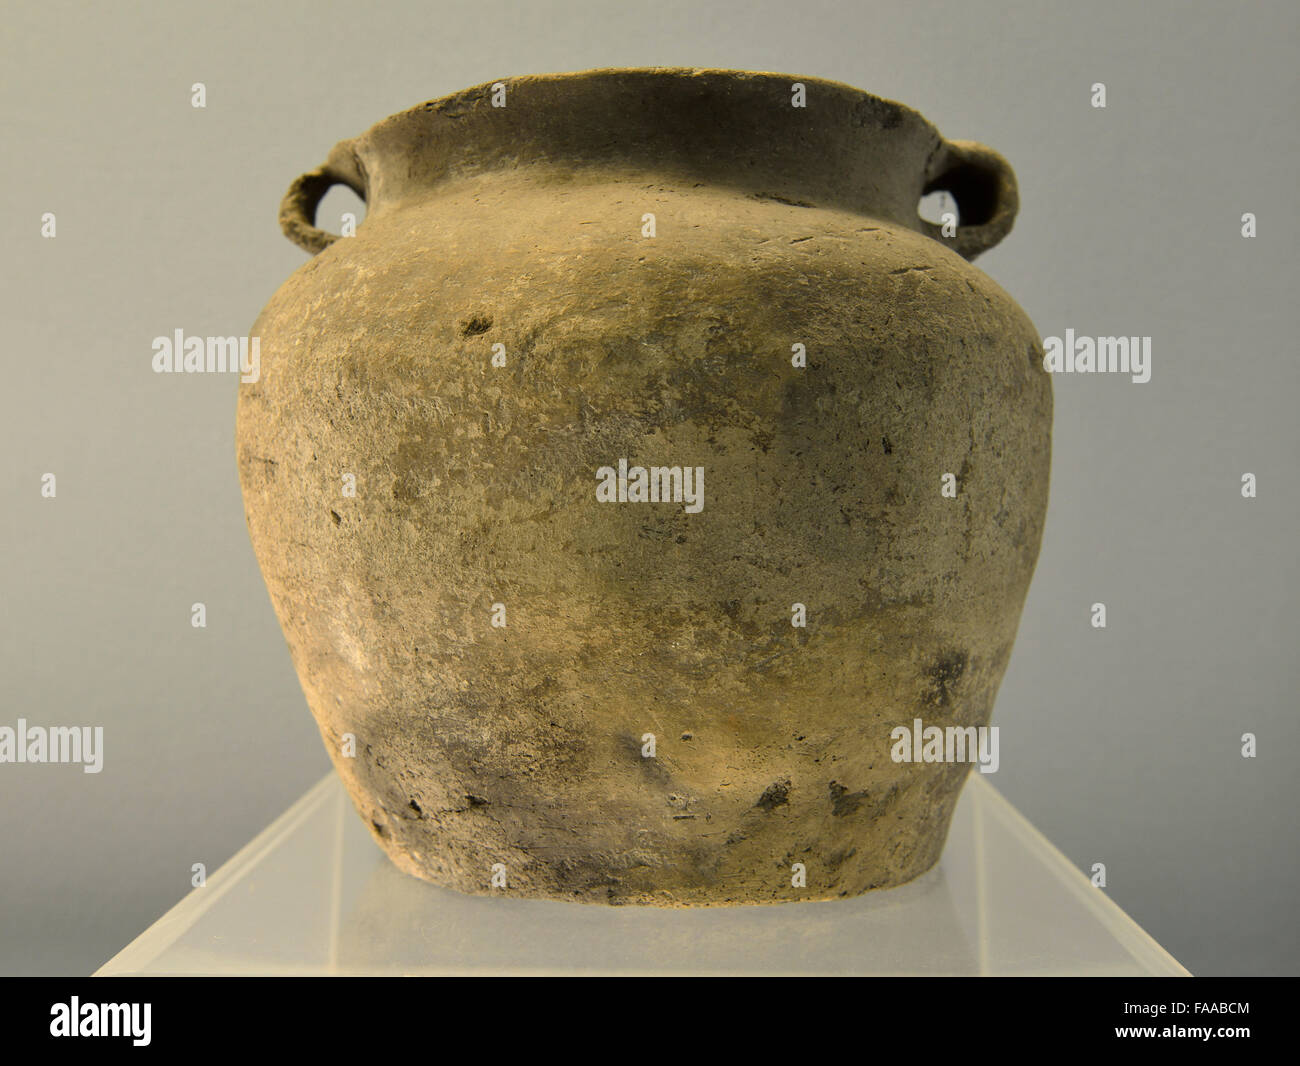 Charcoal-Mixed Pot poterie noire avec deux oreilles. La culture Hemudu, ca.4800 B.C. Musée de Shanghai. Banque D'Images